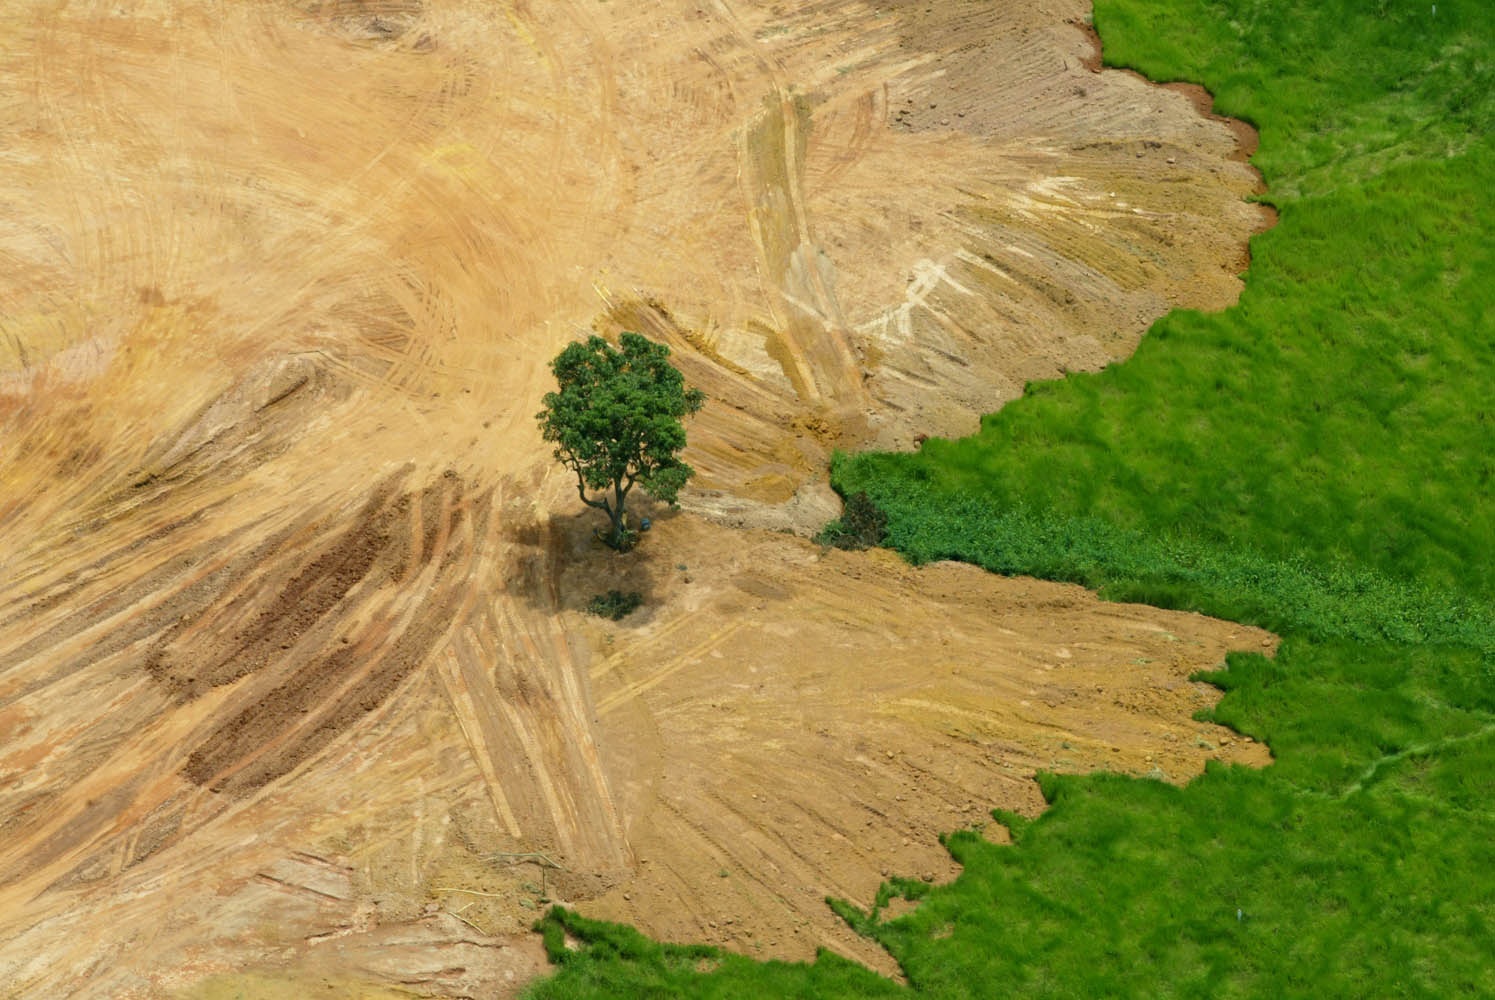 A Floresta Amazônica, que já teve mais de 20% da sua área destruída totalmente, é vítima constante de desmatamentos, garimpos ilegais, mineração predatória e queimadas criminosas. Foto Custódio Coimbra